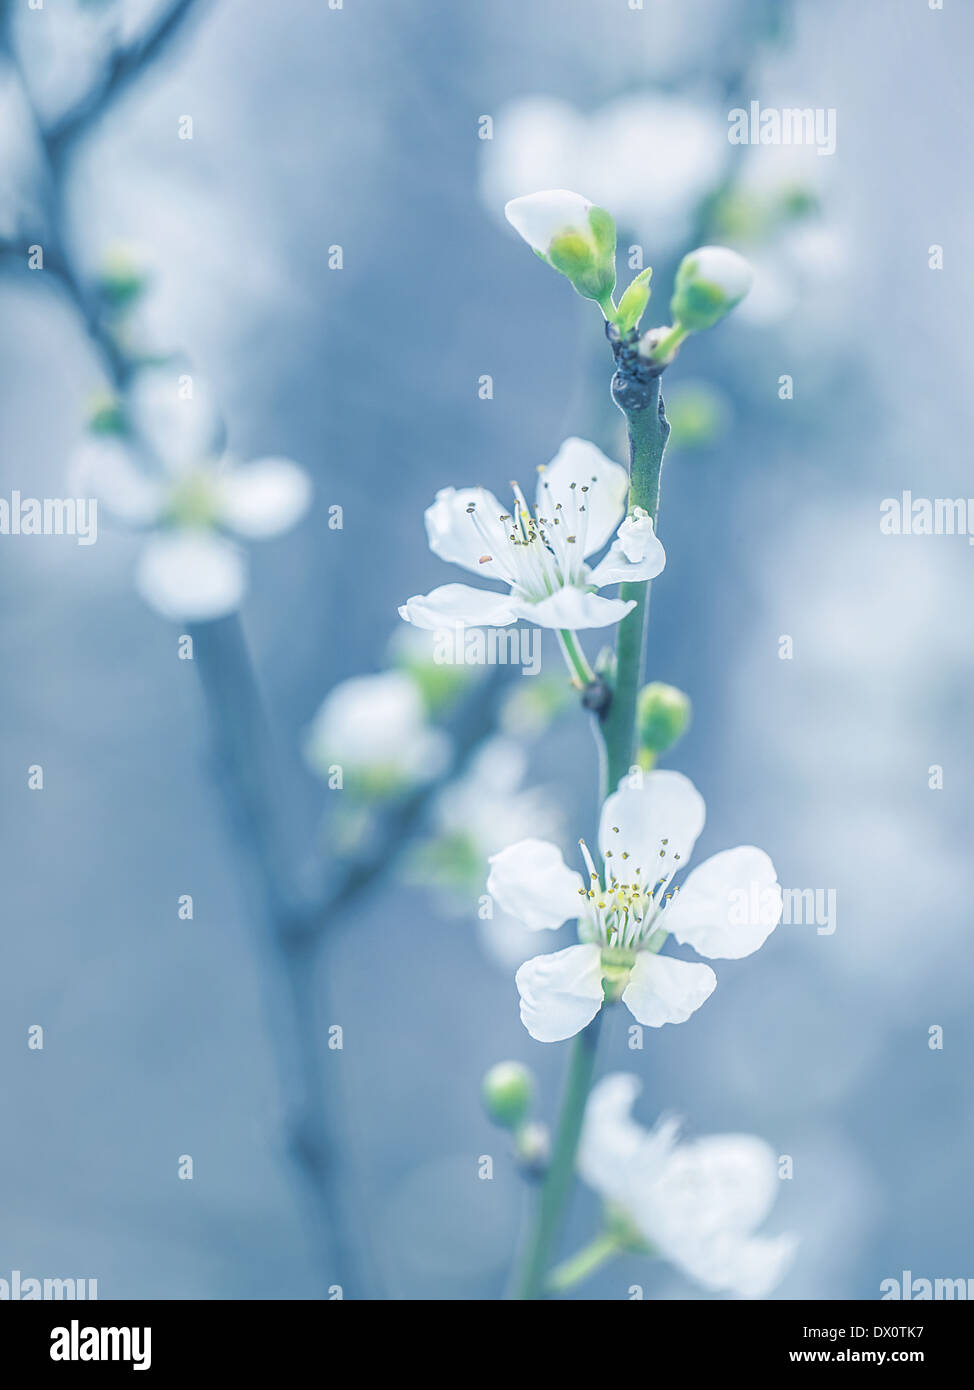 Blühender Baum im Frühling, frischen weißen Blüten auf dem Zweig der Obstbaum, Pflanze Blüte abstrakt blau Hintergrund Stockfoto